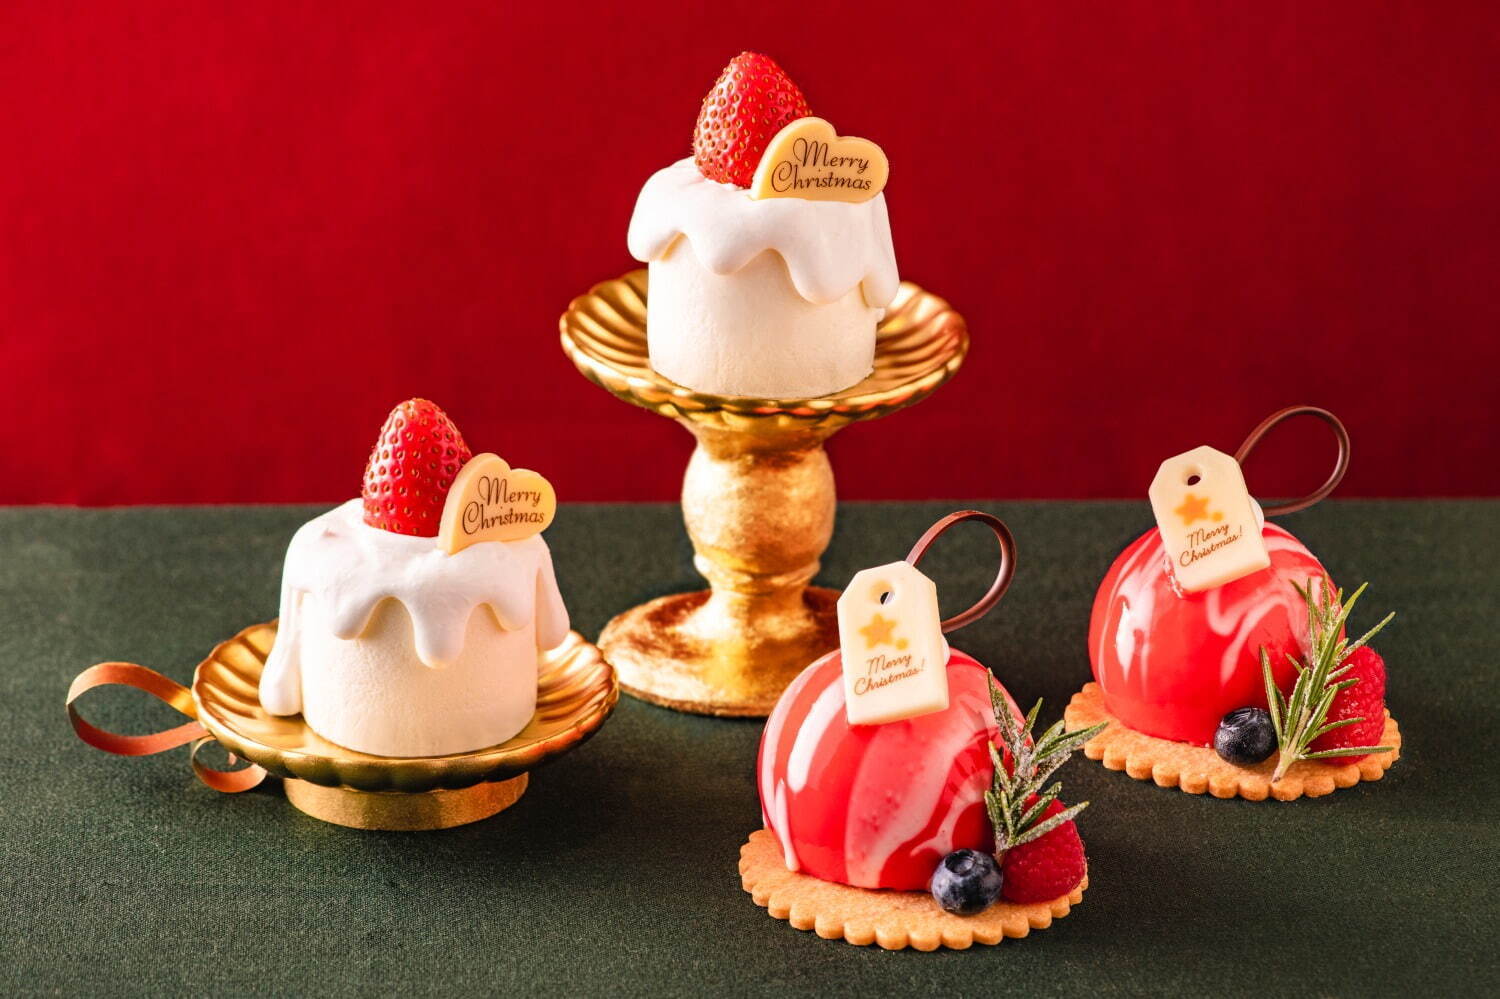 左から)クリスマスキャンドルのフロマージュブランムース 700円
ラズベリー＆ピスタチオのオーナメントムースケーキ 700円